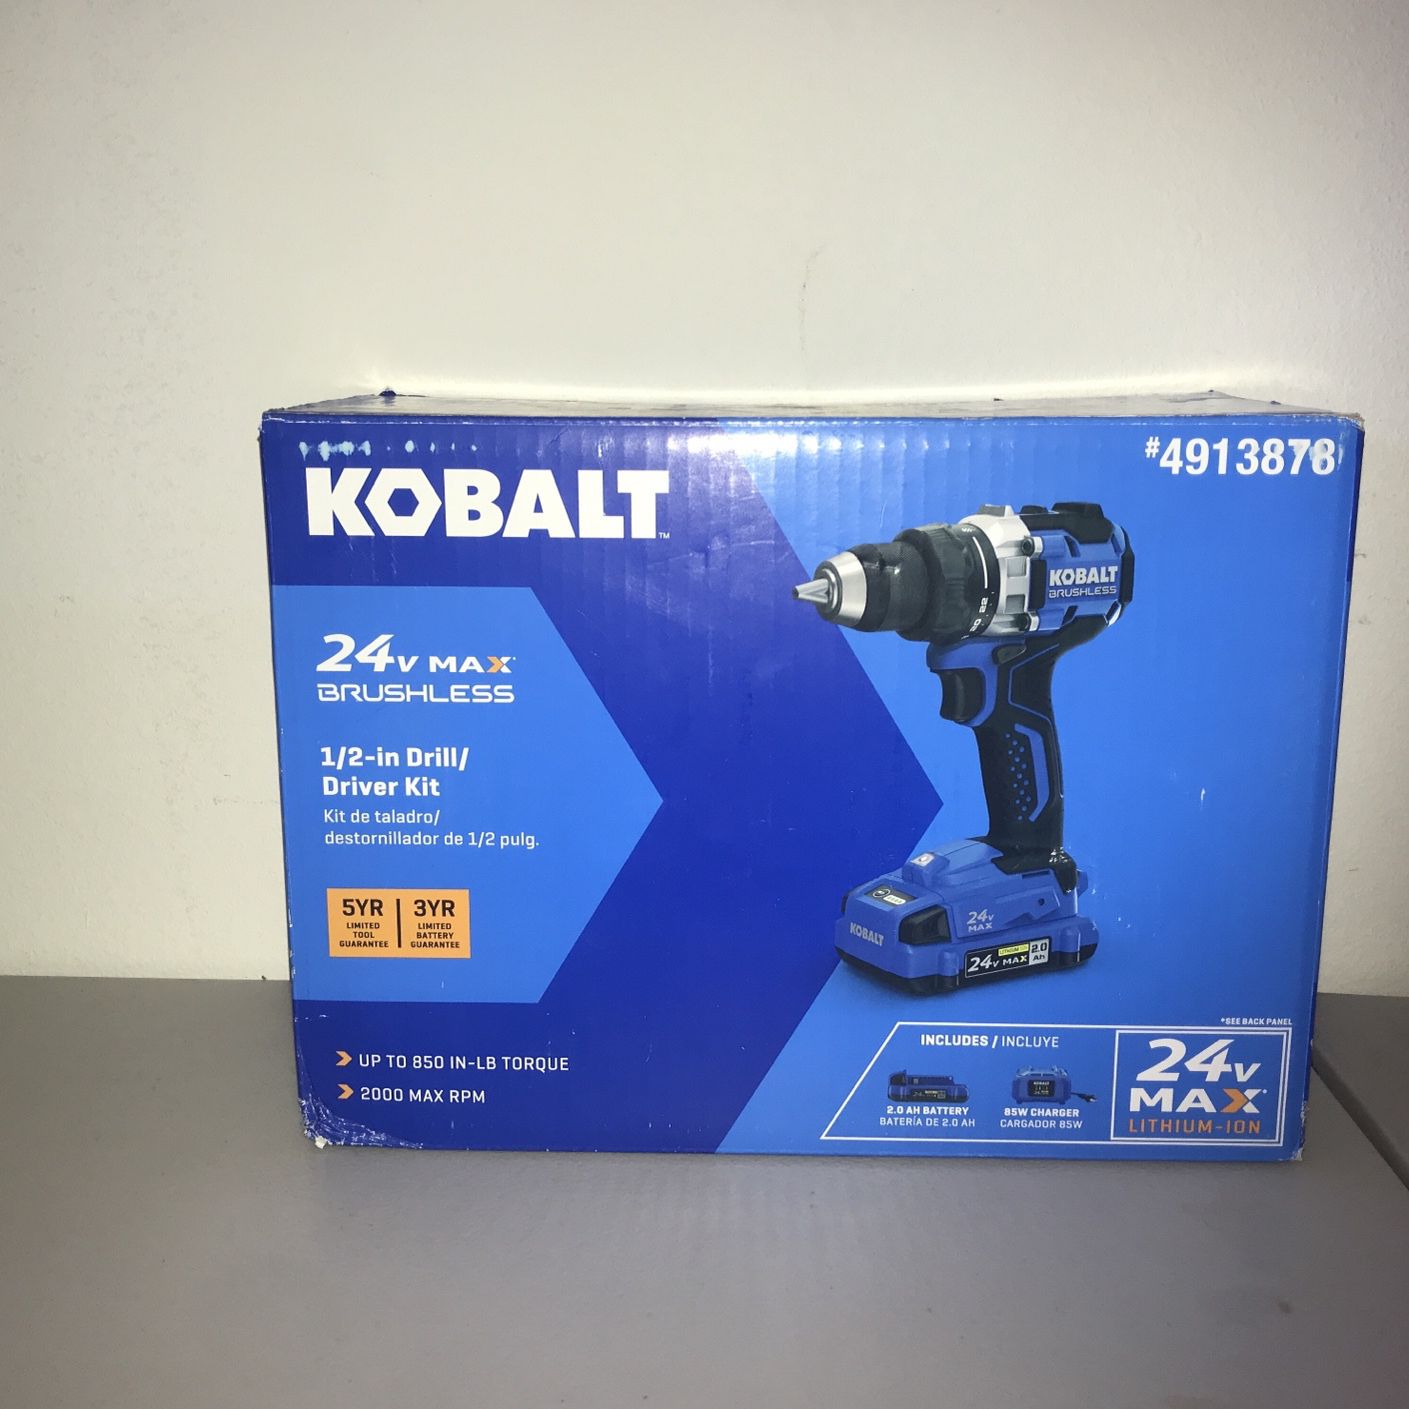 Kobalt 24v Max Brushless 1/2 In Drill/Driver Kit M